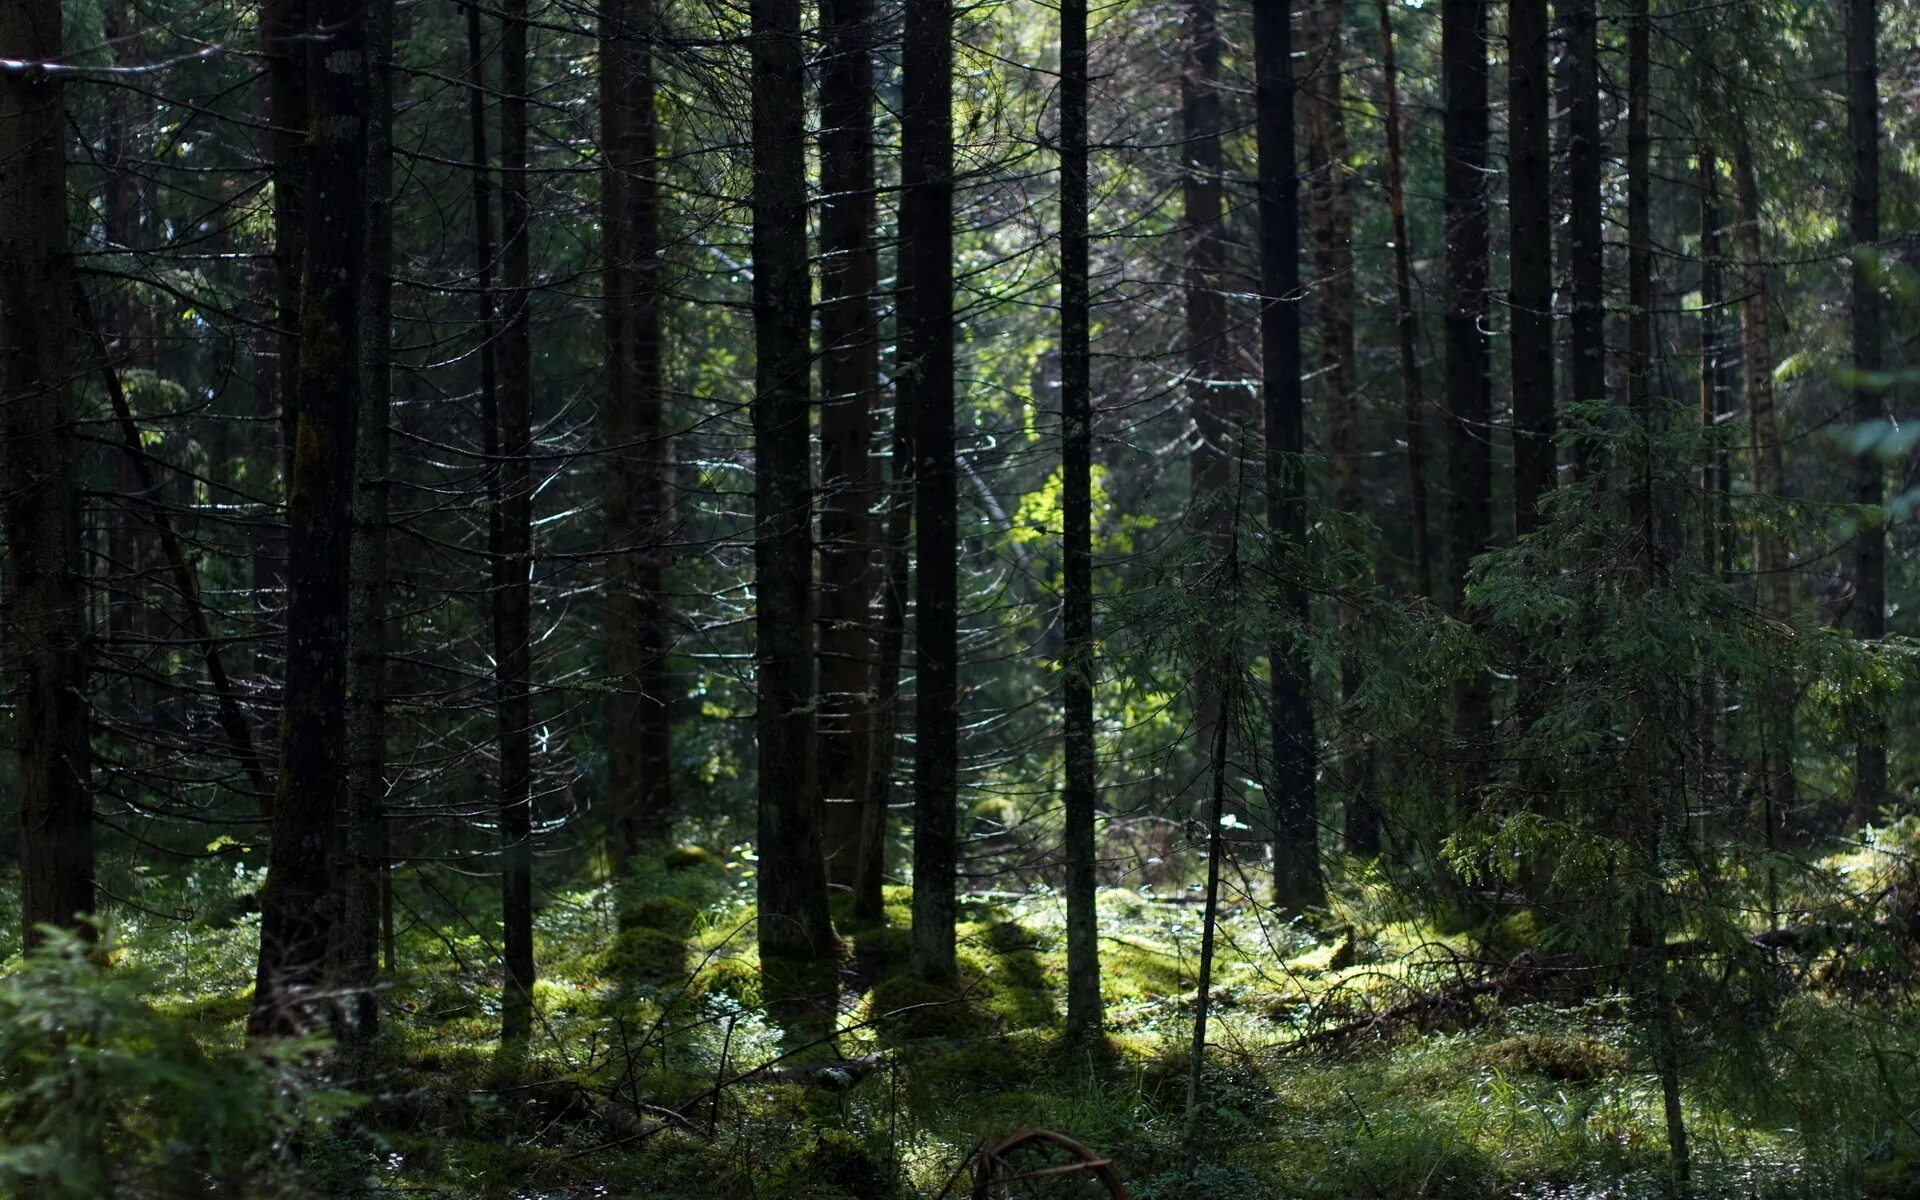 Спрят вшись в глубь леса. Беловежская пуща туманный лес. Густой лес. Дремучий Сосновый лес. Глубина леса.